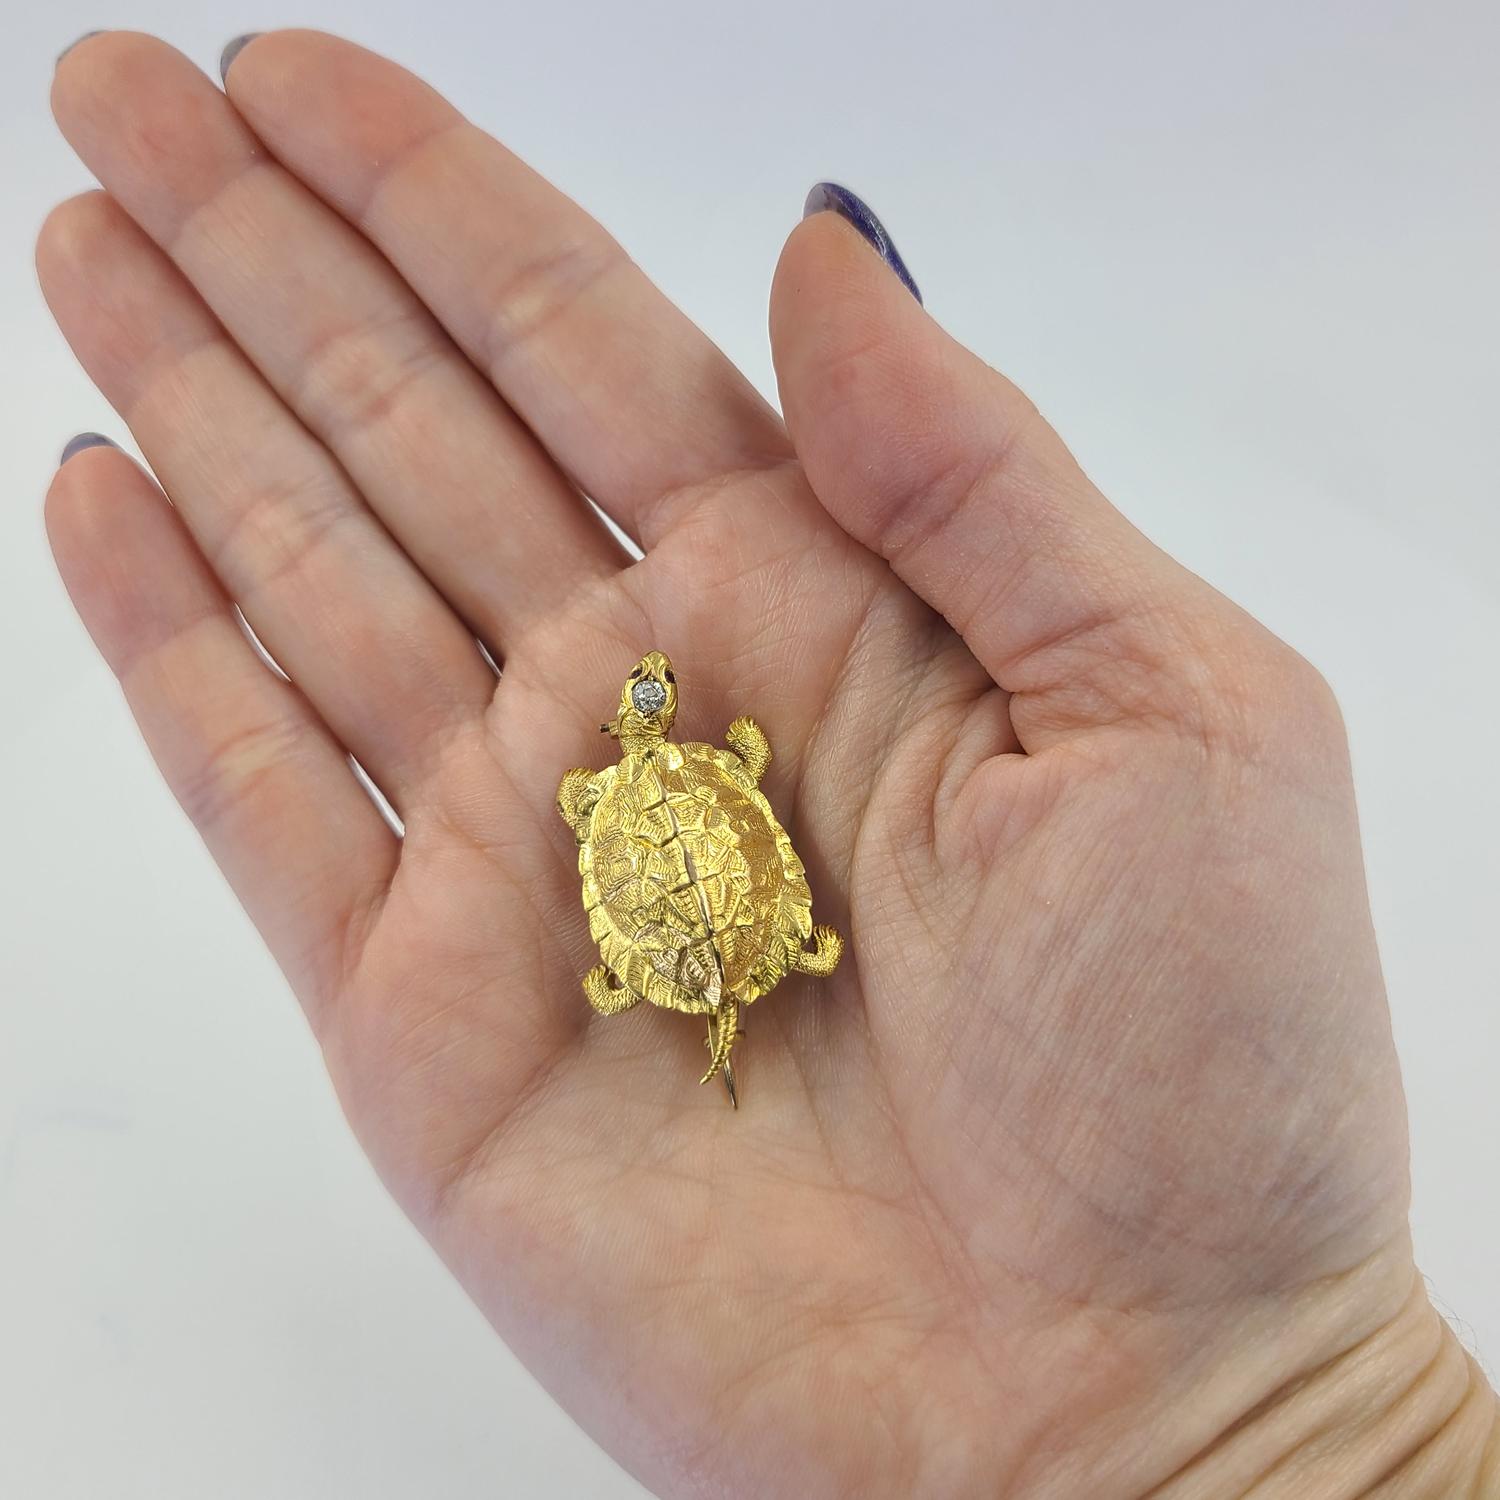 14 Karat Gelbgold Antike Schildkröte Pin mit Satin Finish Textur, 0,03 Karat Old European Cut Diamant und 0,01 Karat Rubin Augen. Das fertige Gewicht beträgt 7.0 Gramm.